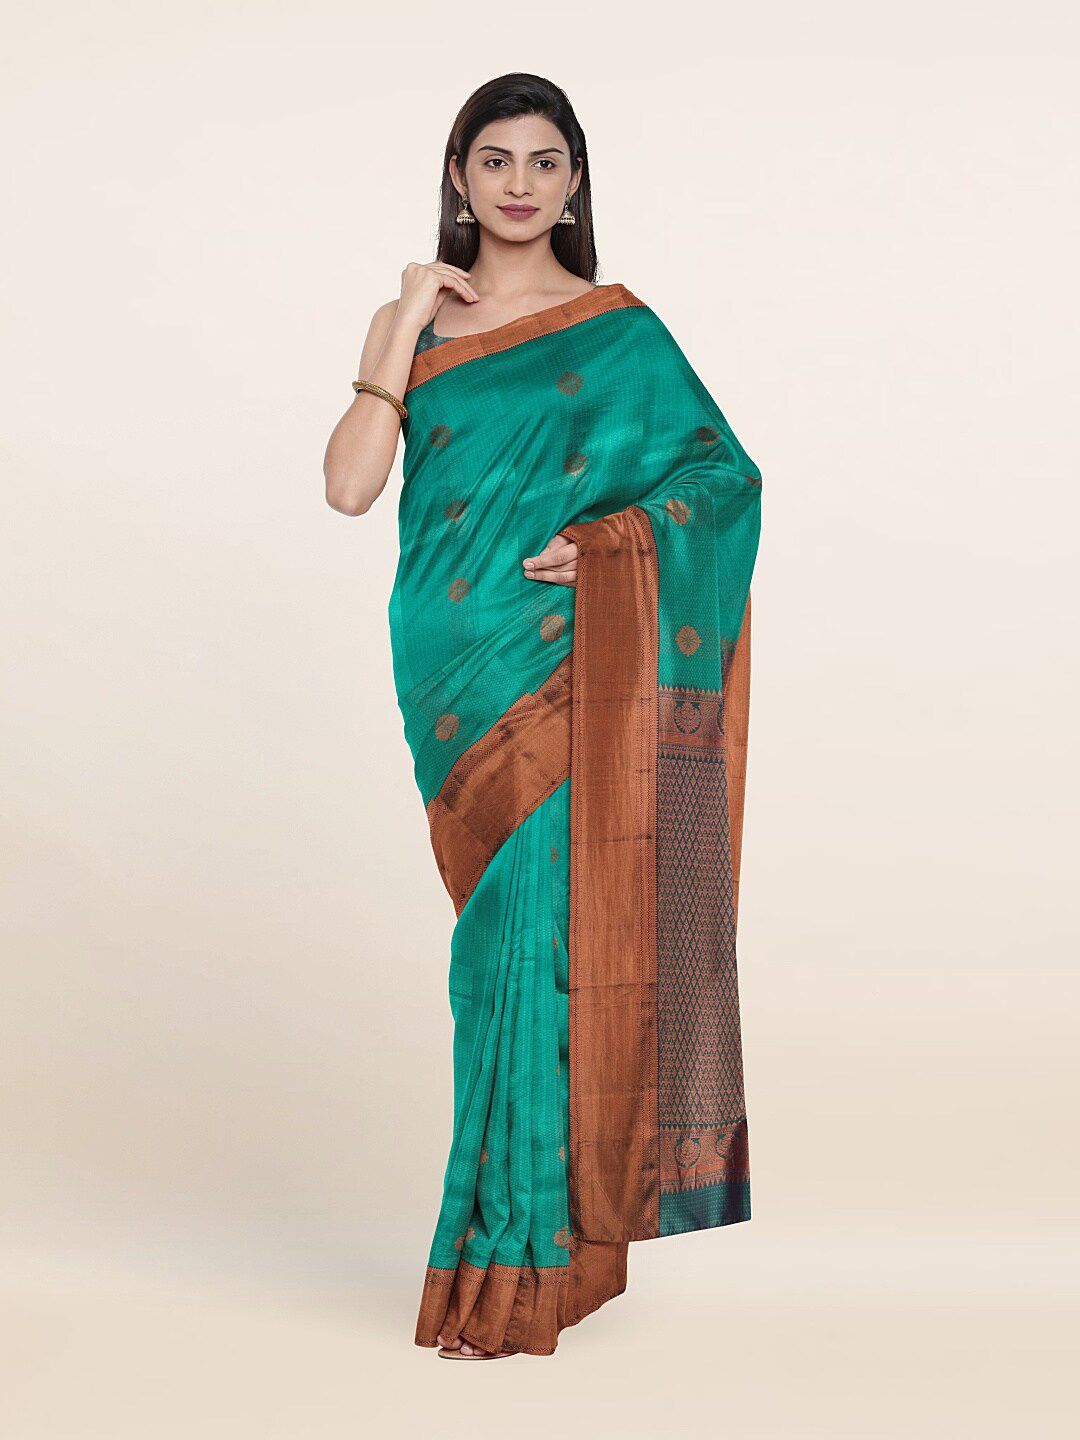 Pothys Green & Copper-Toned Woven Design Pure Silk Saree Price in India